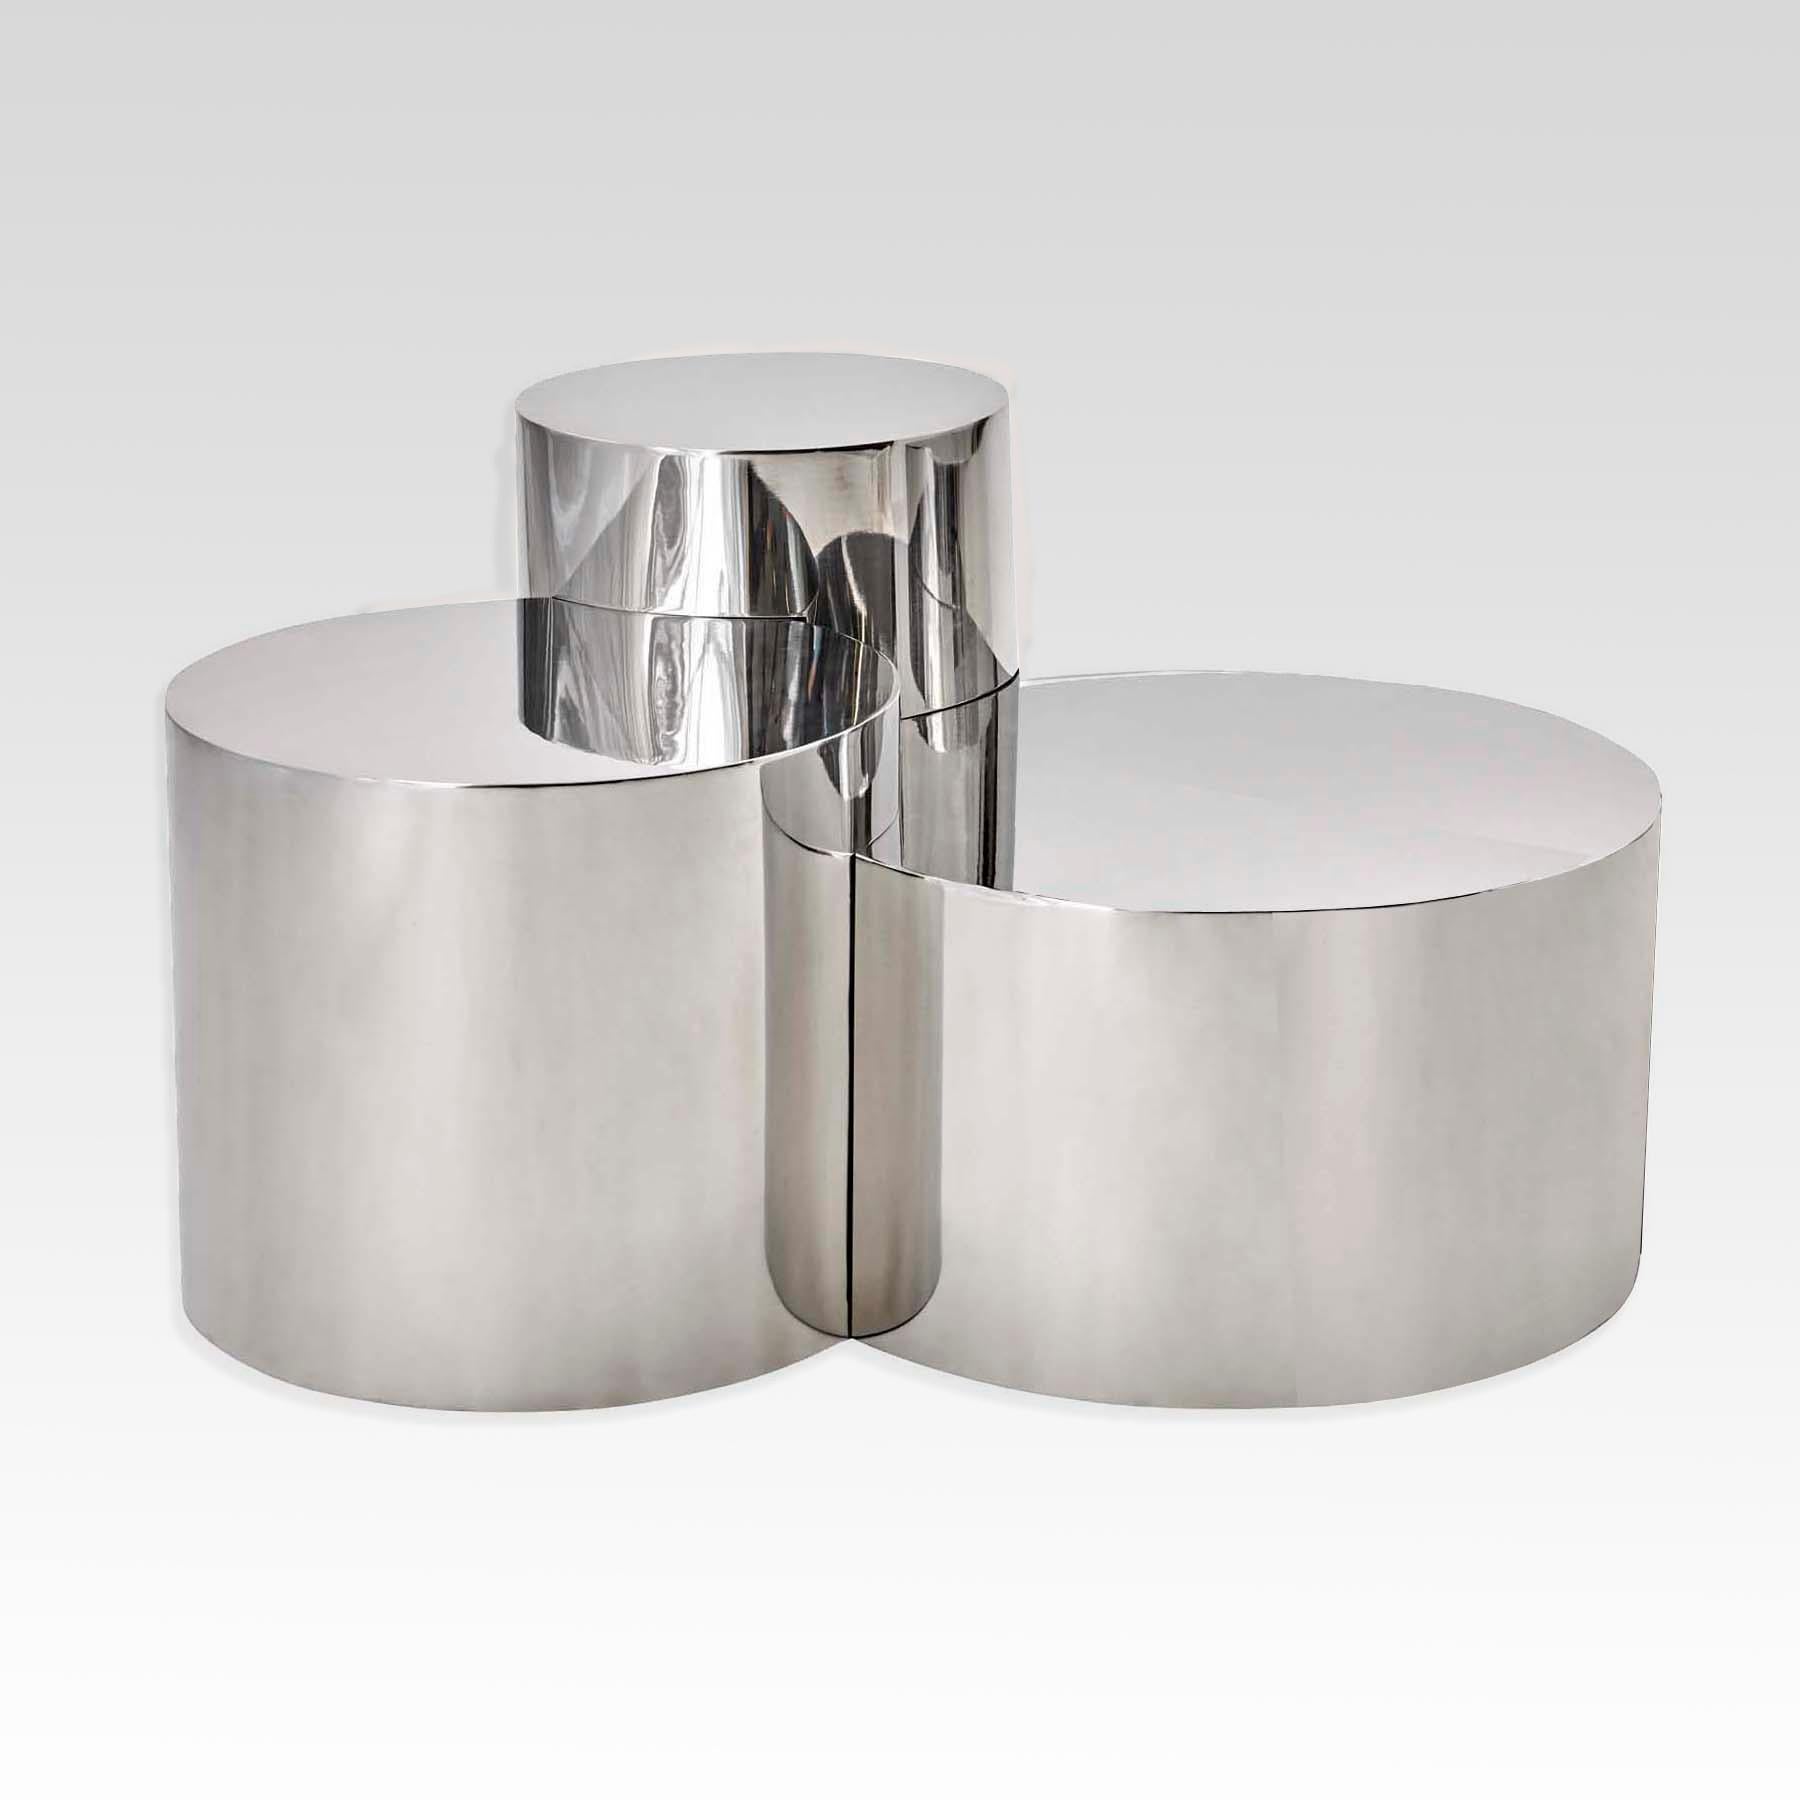 Der Tisch Geometria: Cerchi 4 hebt die minimalistische Form des Zylinders hervor, indem er sie miteinander verbindet und überlappt, um ein sehr skulpturales Stück zu schaffen. Abgebildet in poliertem Stahl mit vier